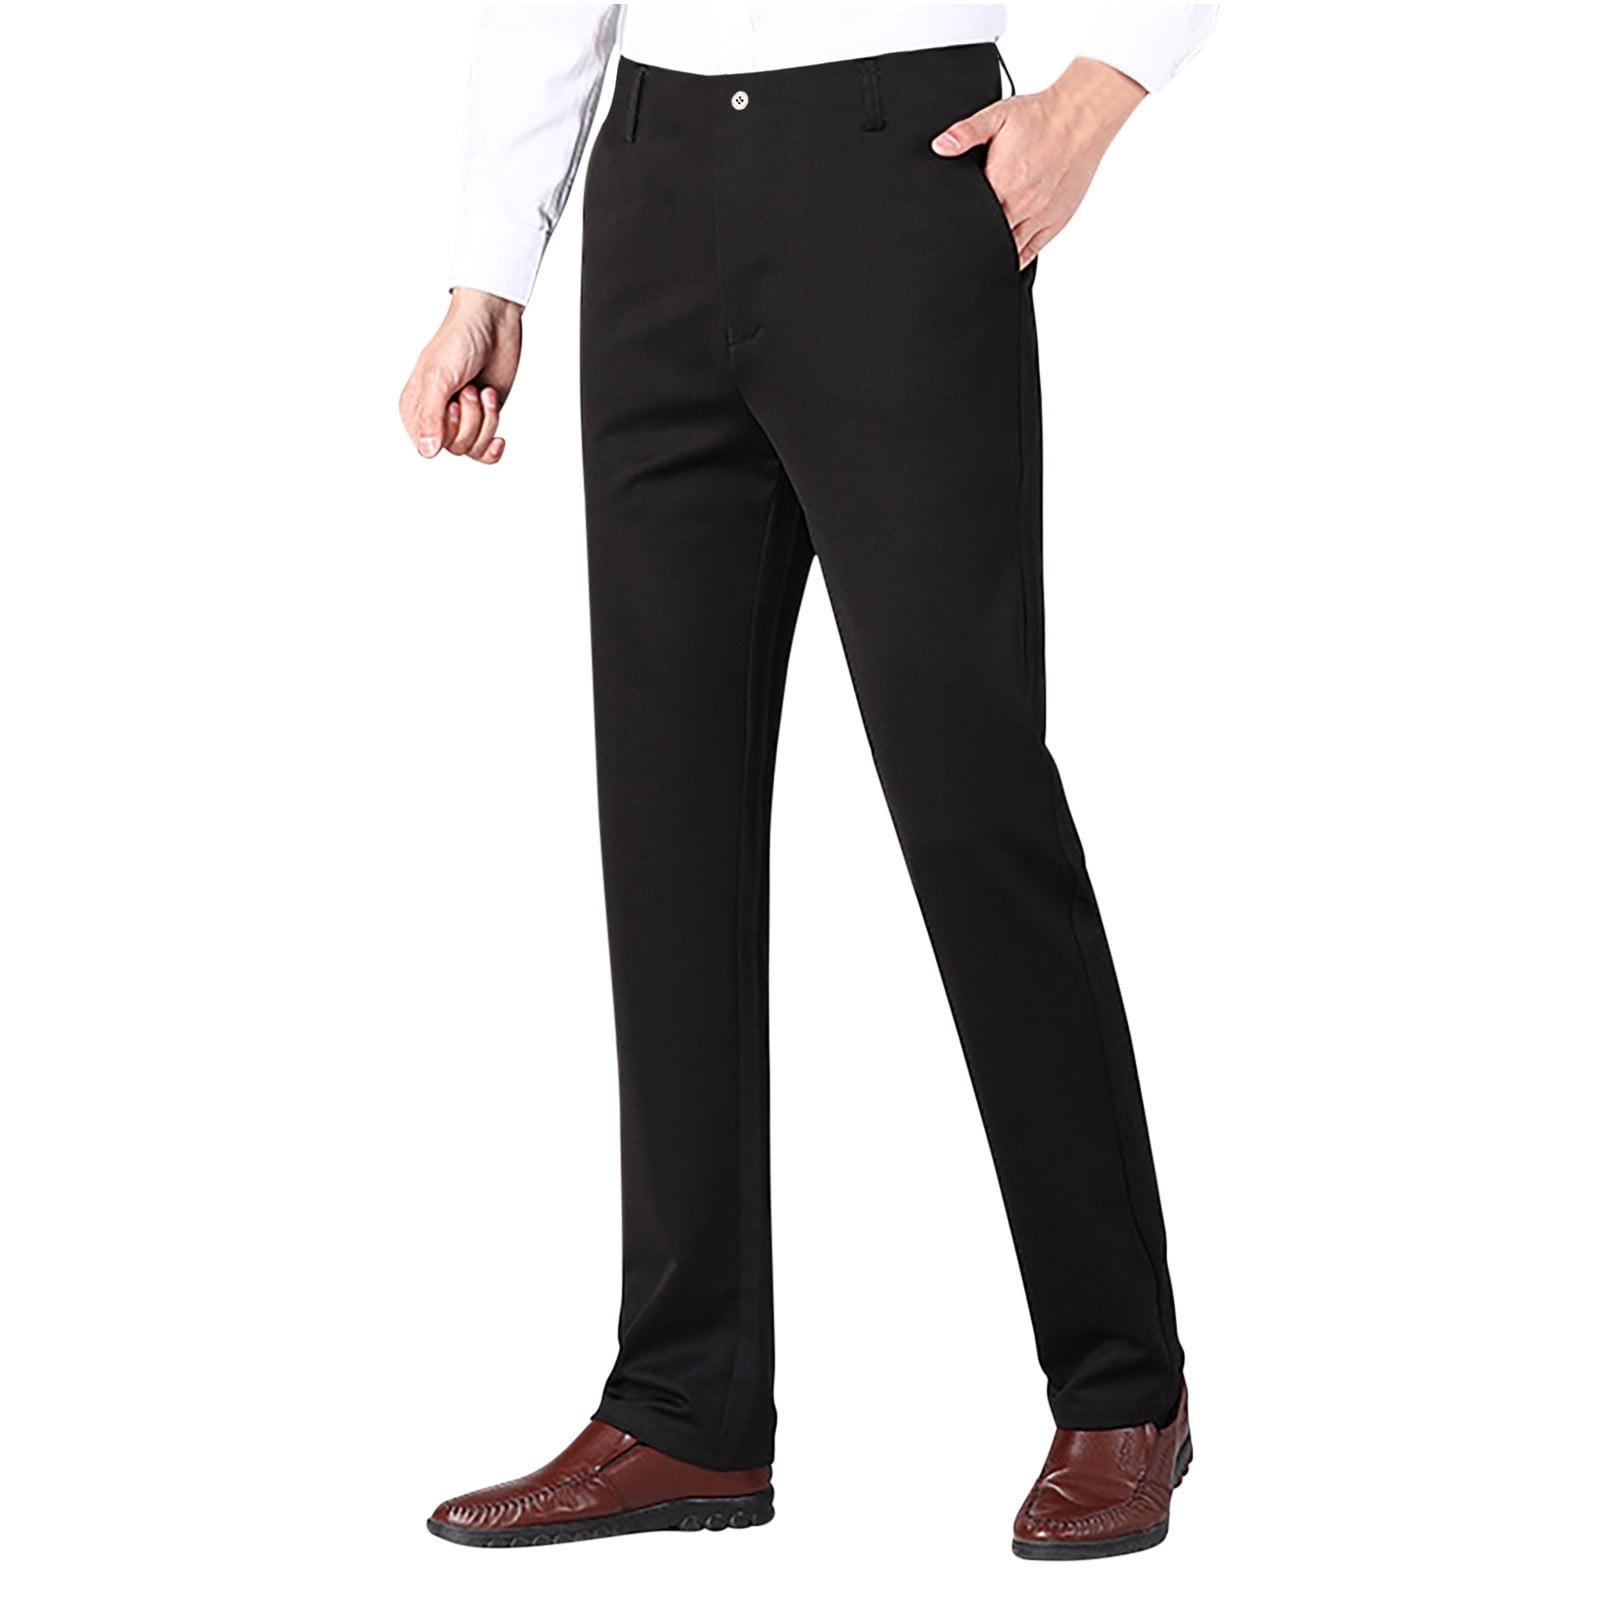 How Should Suit Pants Fit  Pants outfit men, Black suit men